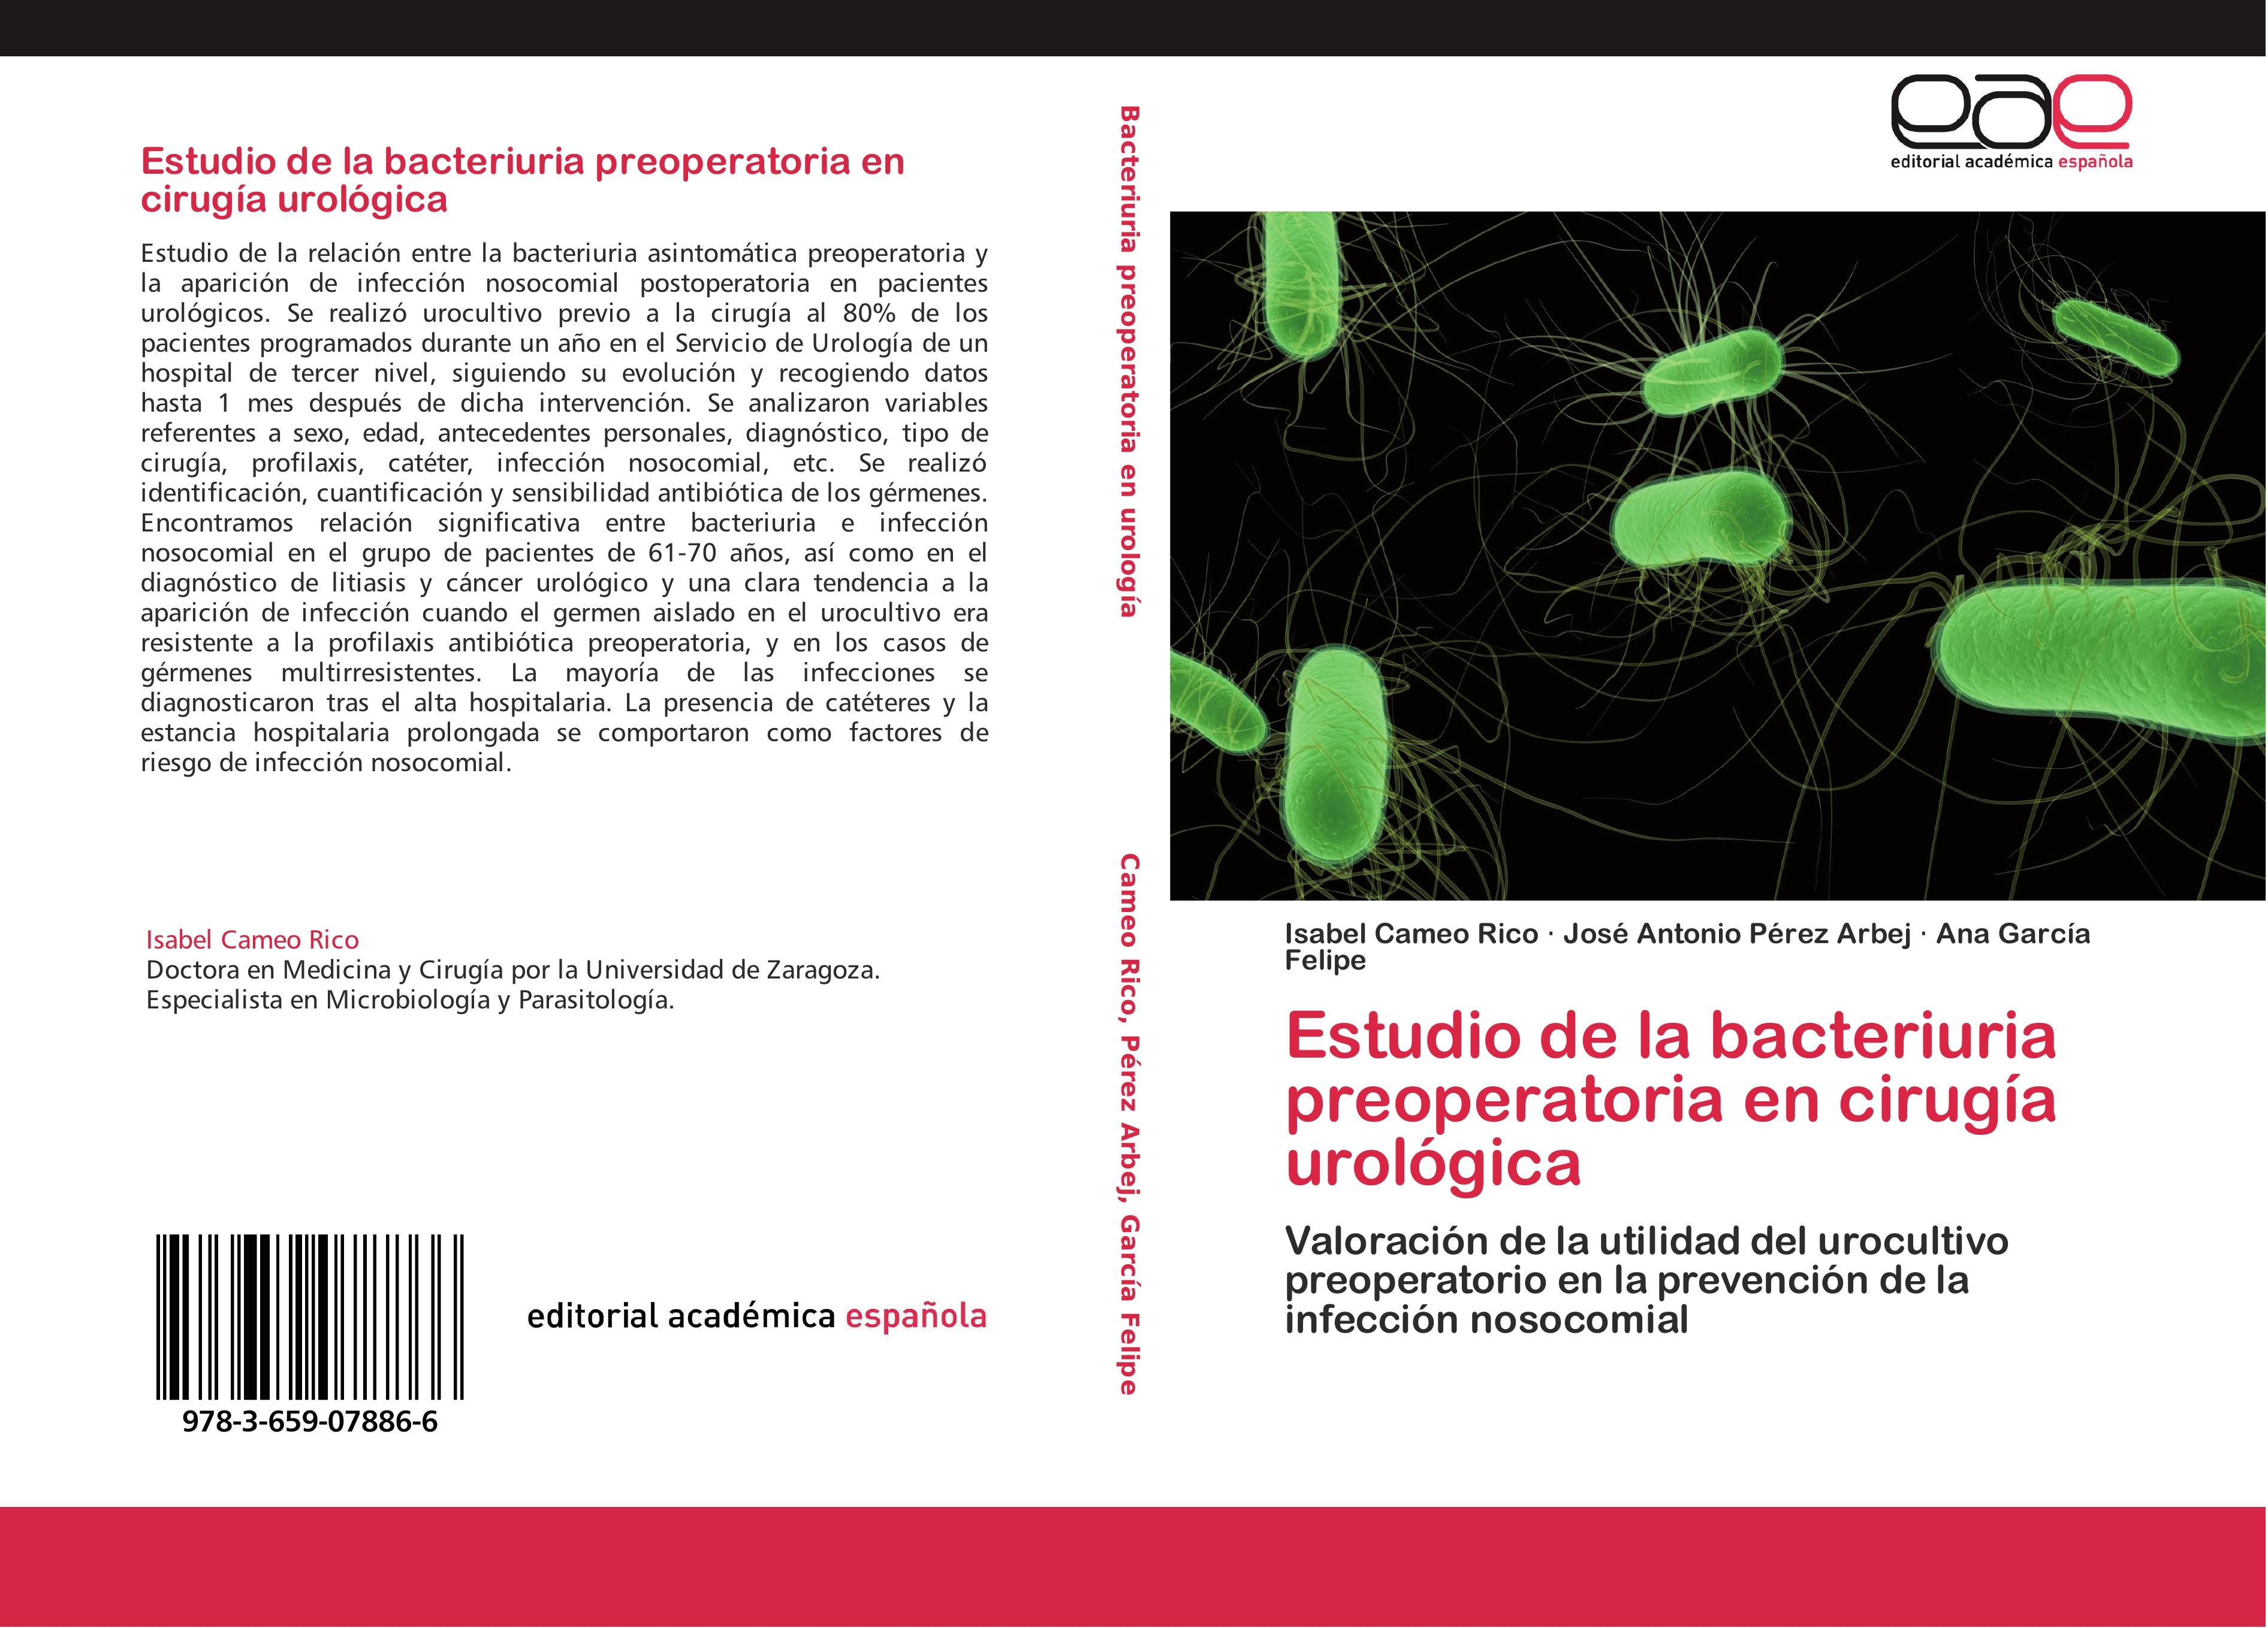 Estudio de la bacteriuria preoperatoria en cirugía urológica - Isabel Cameo Rico José Antonio Pérez Arbej Ana García Felipe